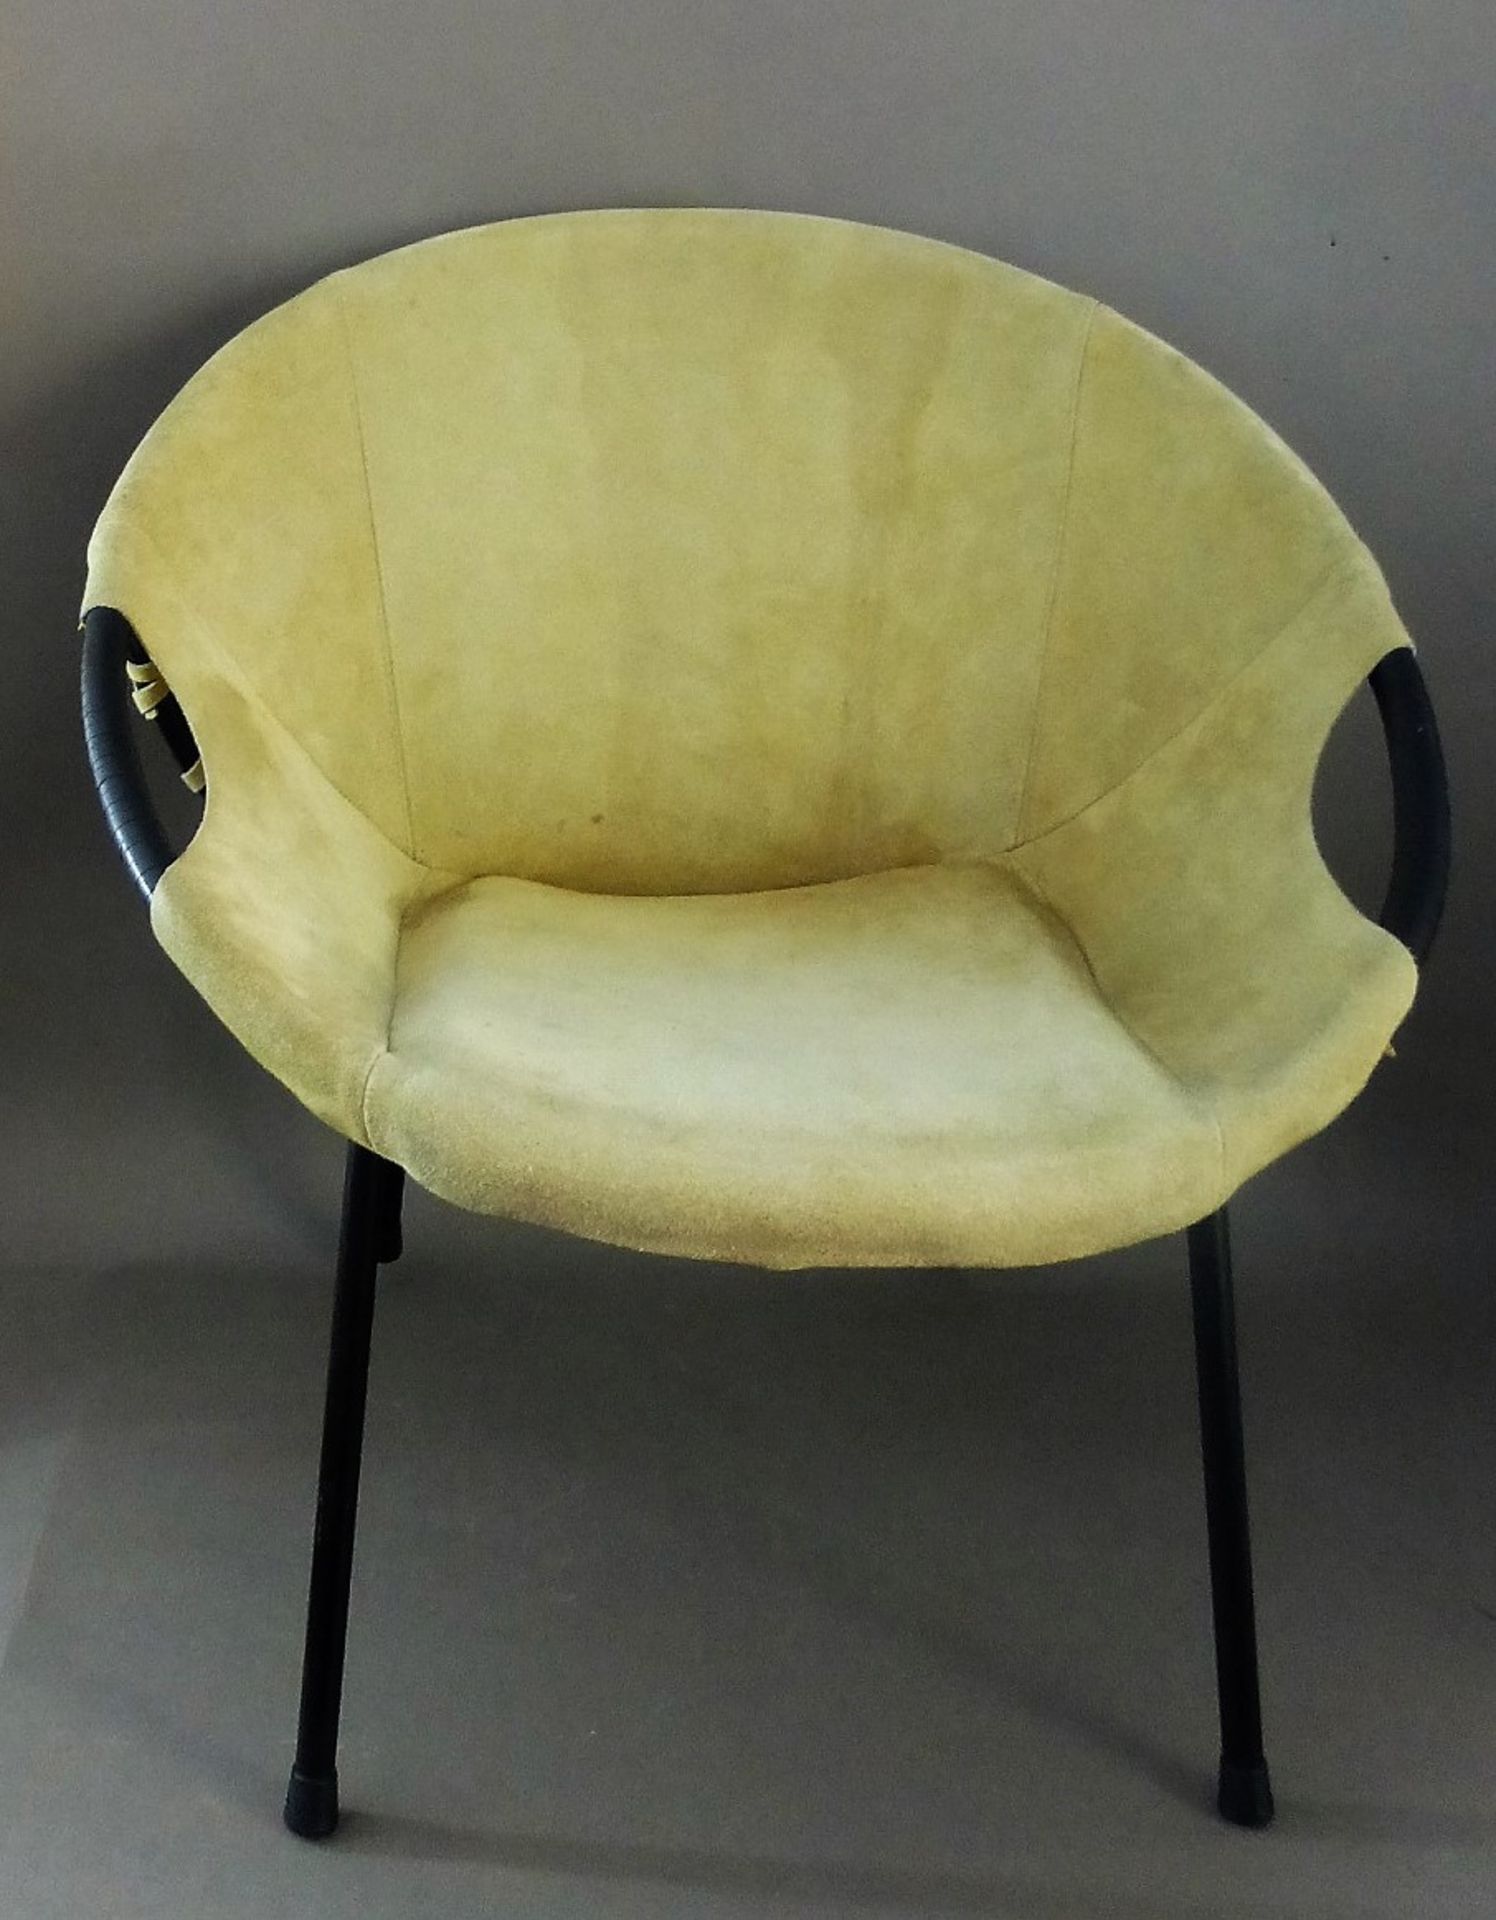 Lusch & Co., Lochhausen, 2 "Balloon Chair", Paar Wildleder - Schalensessel, deutsch 1960er - Image 2 of 2